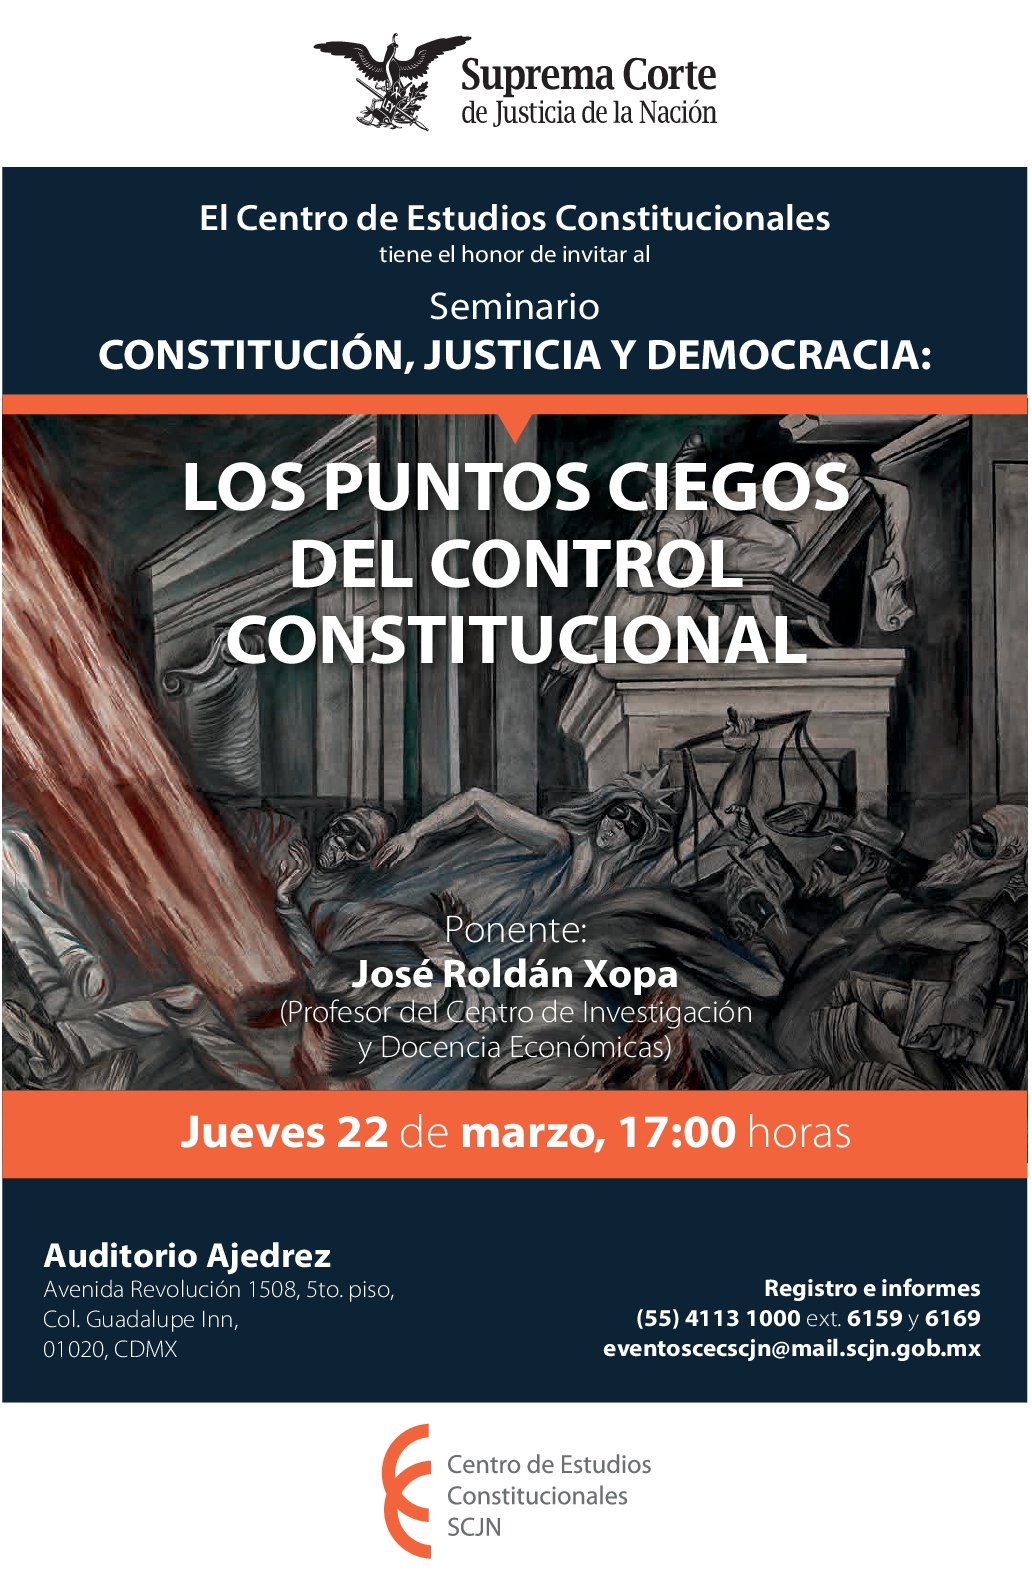 Seminario "Constitución, Justicia y Democracia": Los puntos ciegos del control constitucional